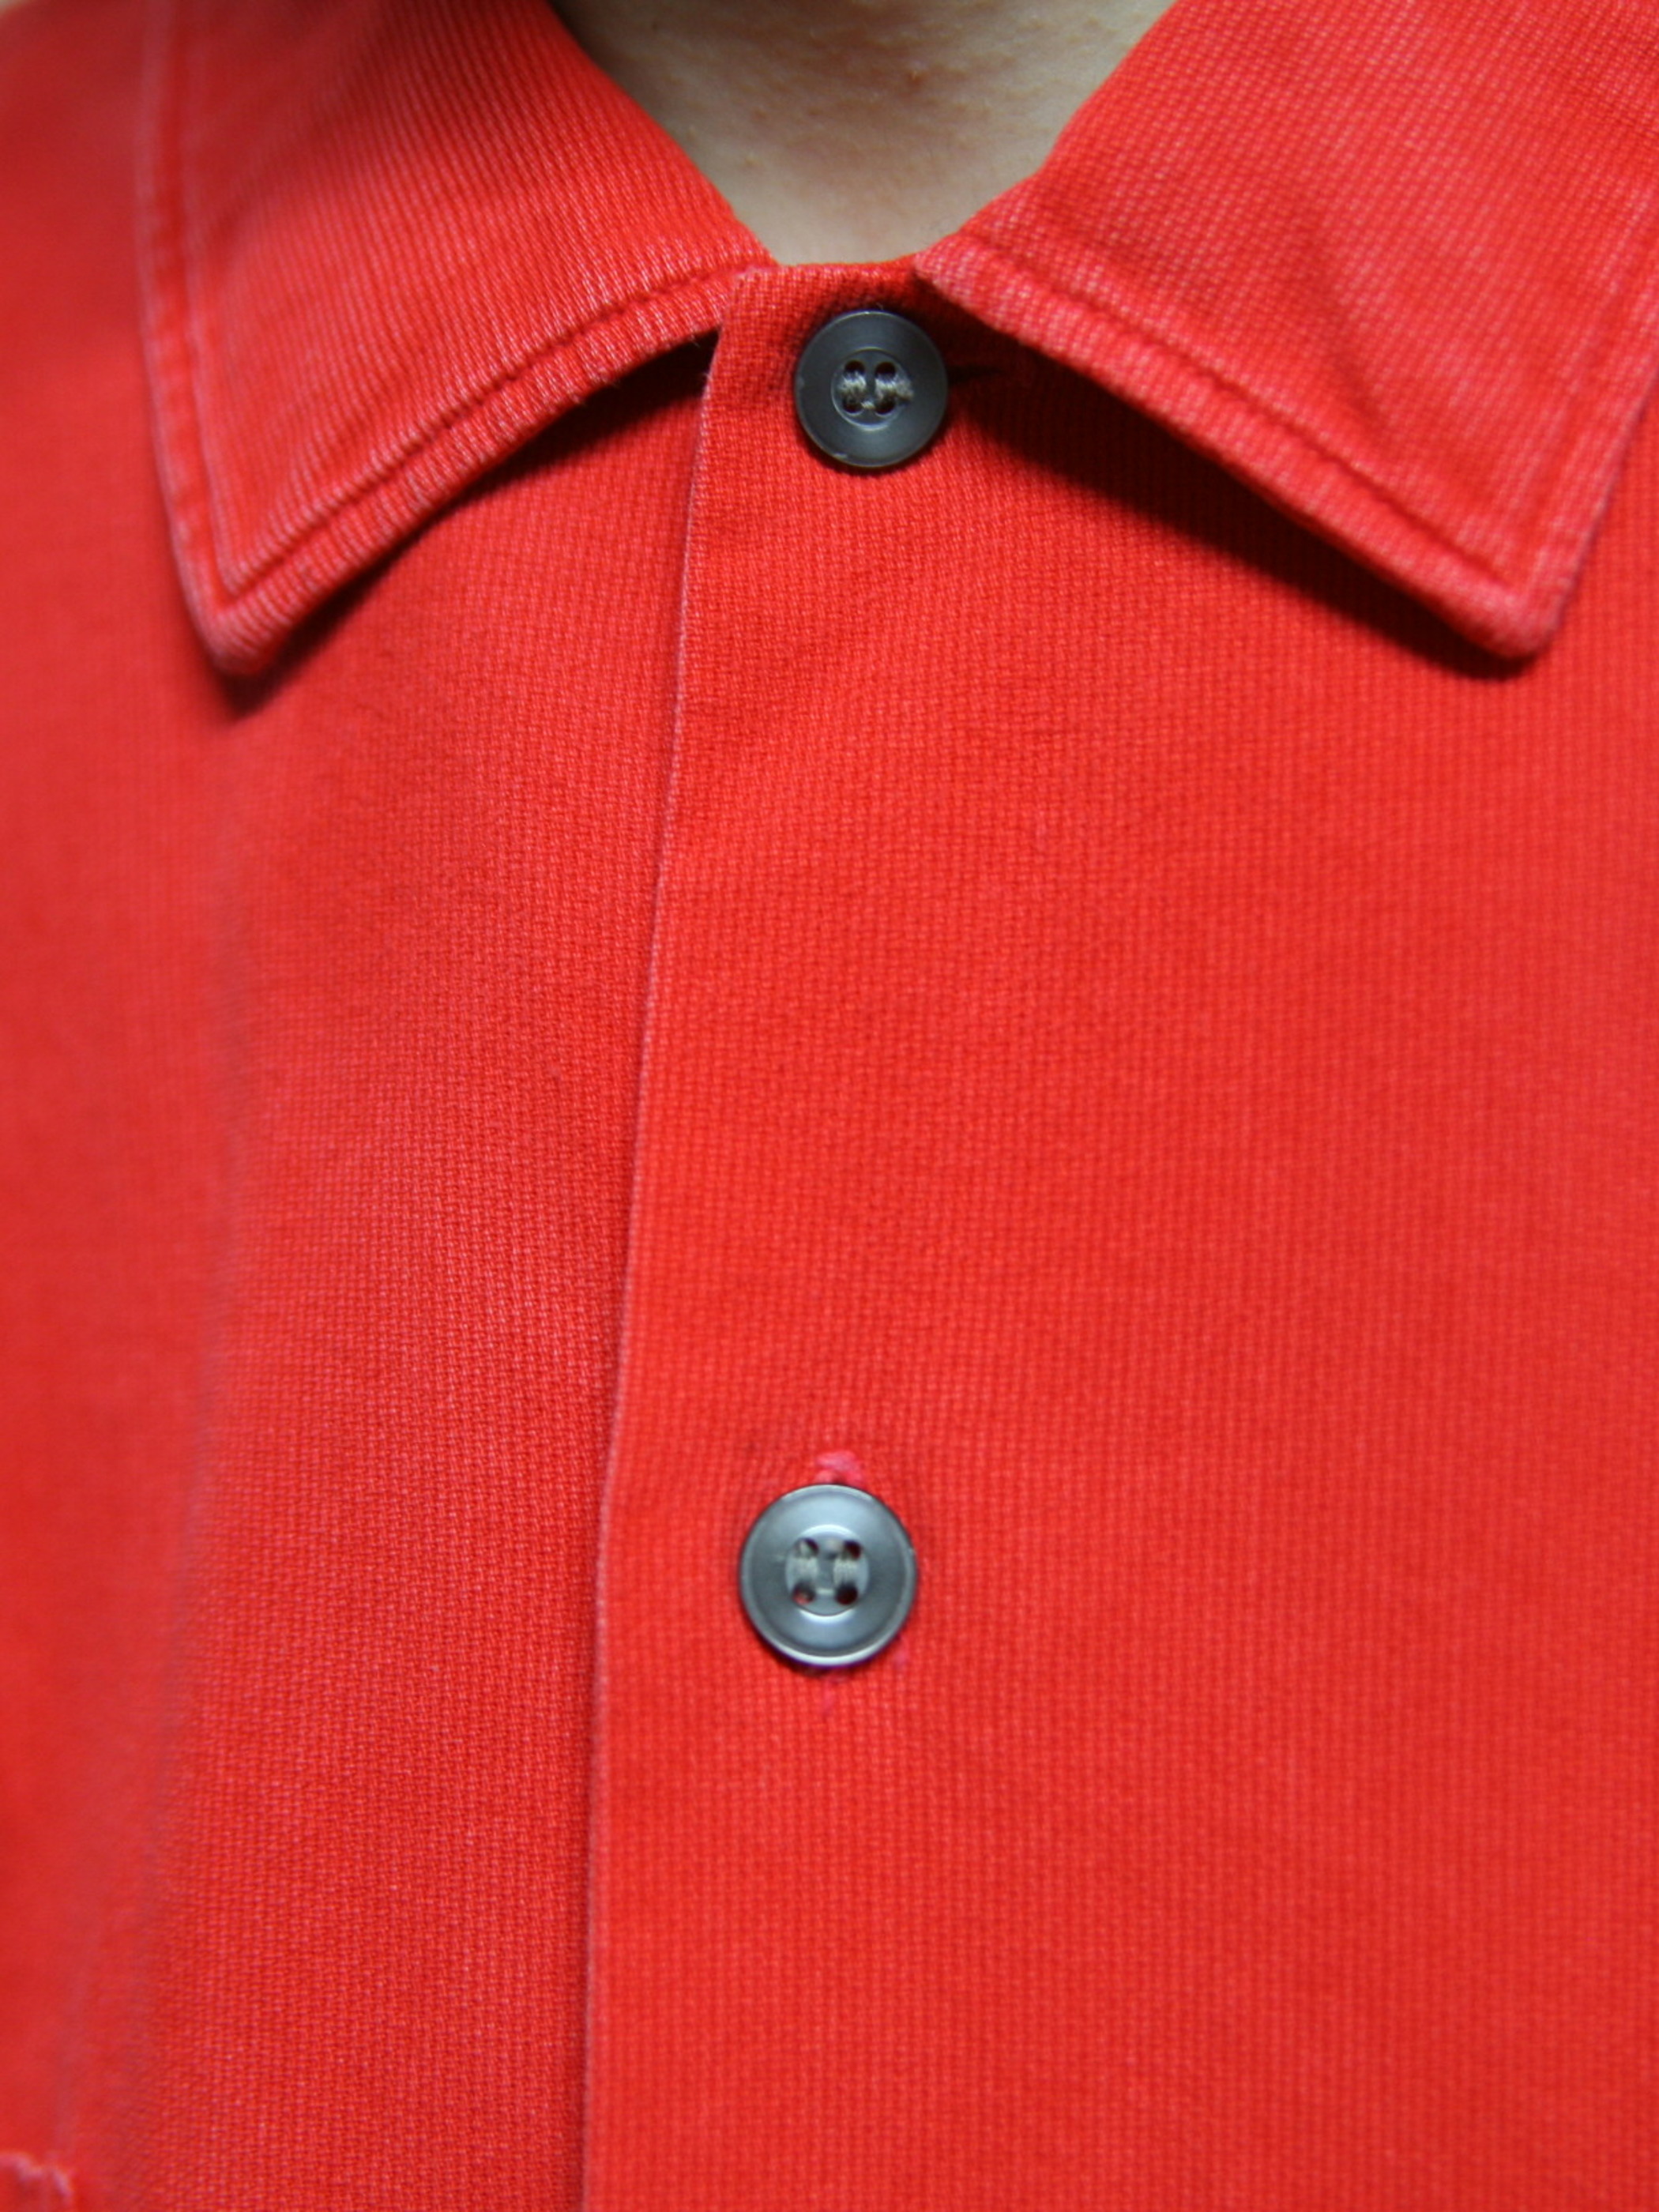 1960s "Jack steuern" pique shirt -RED-